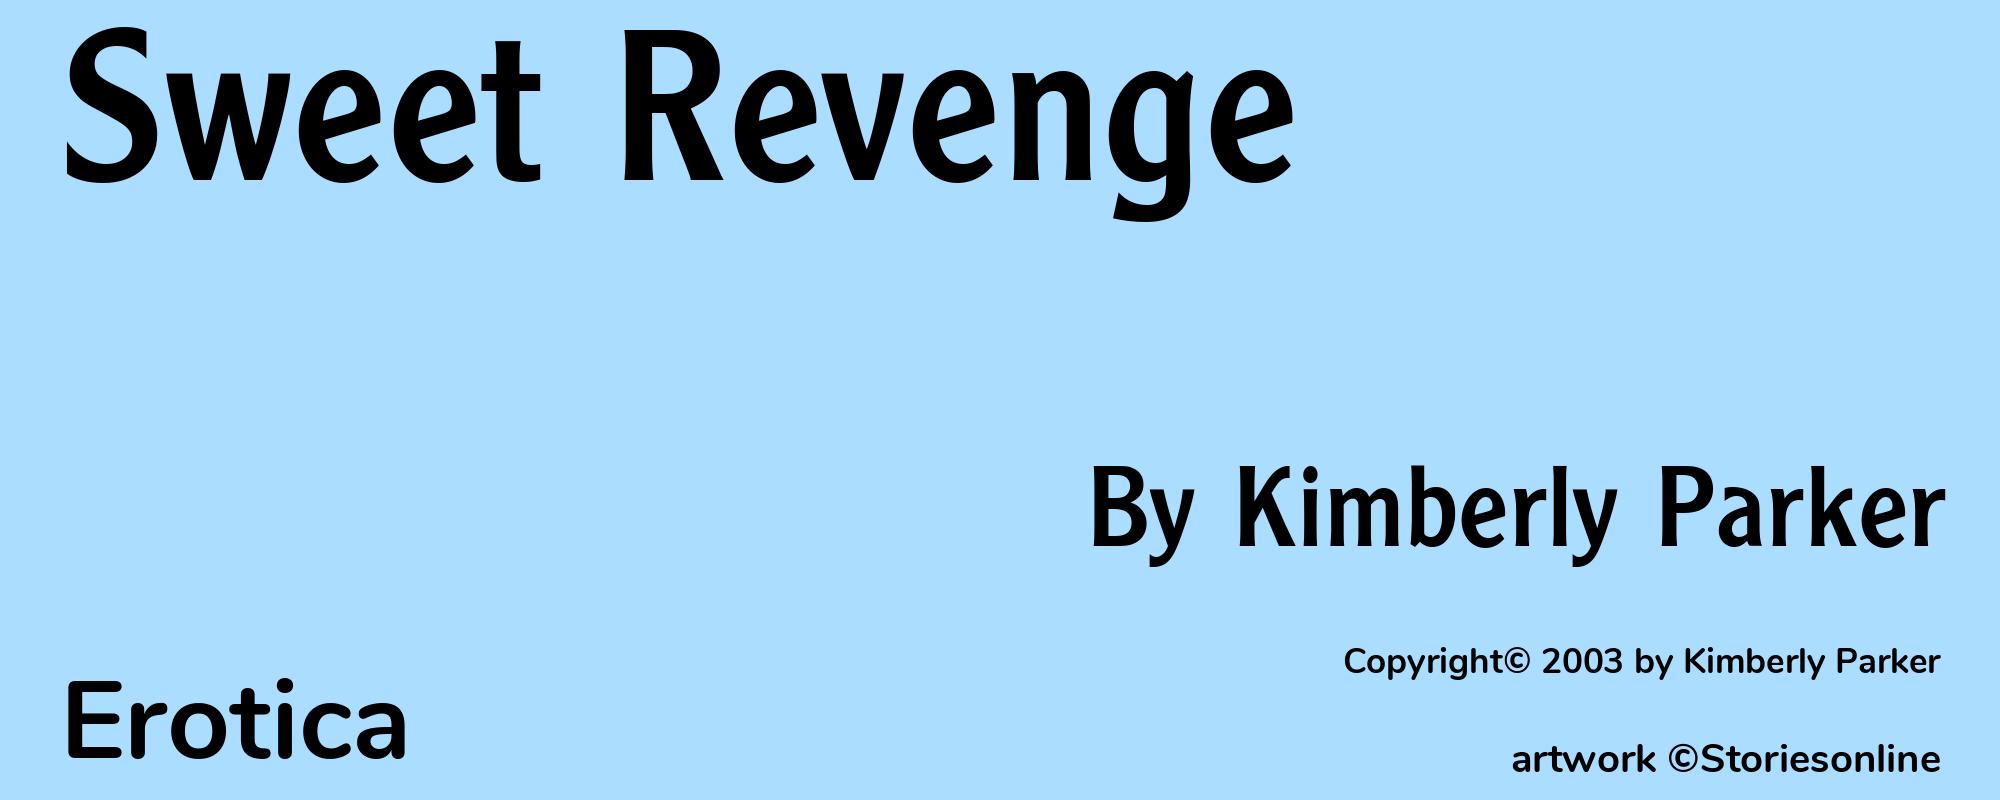 Sweet Revenge - Cover